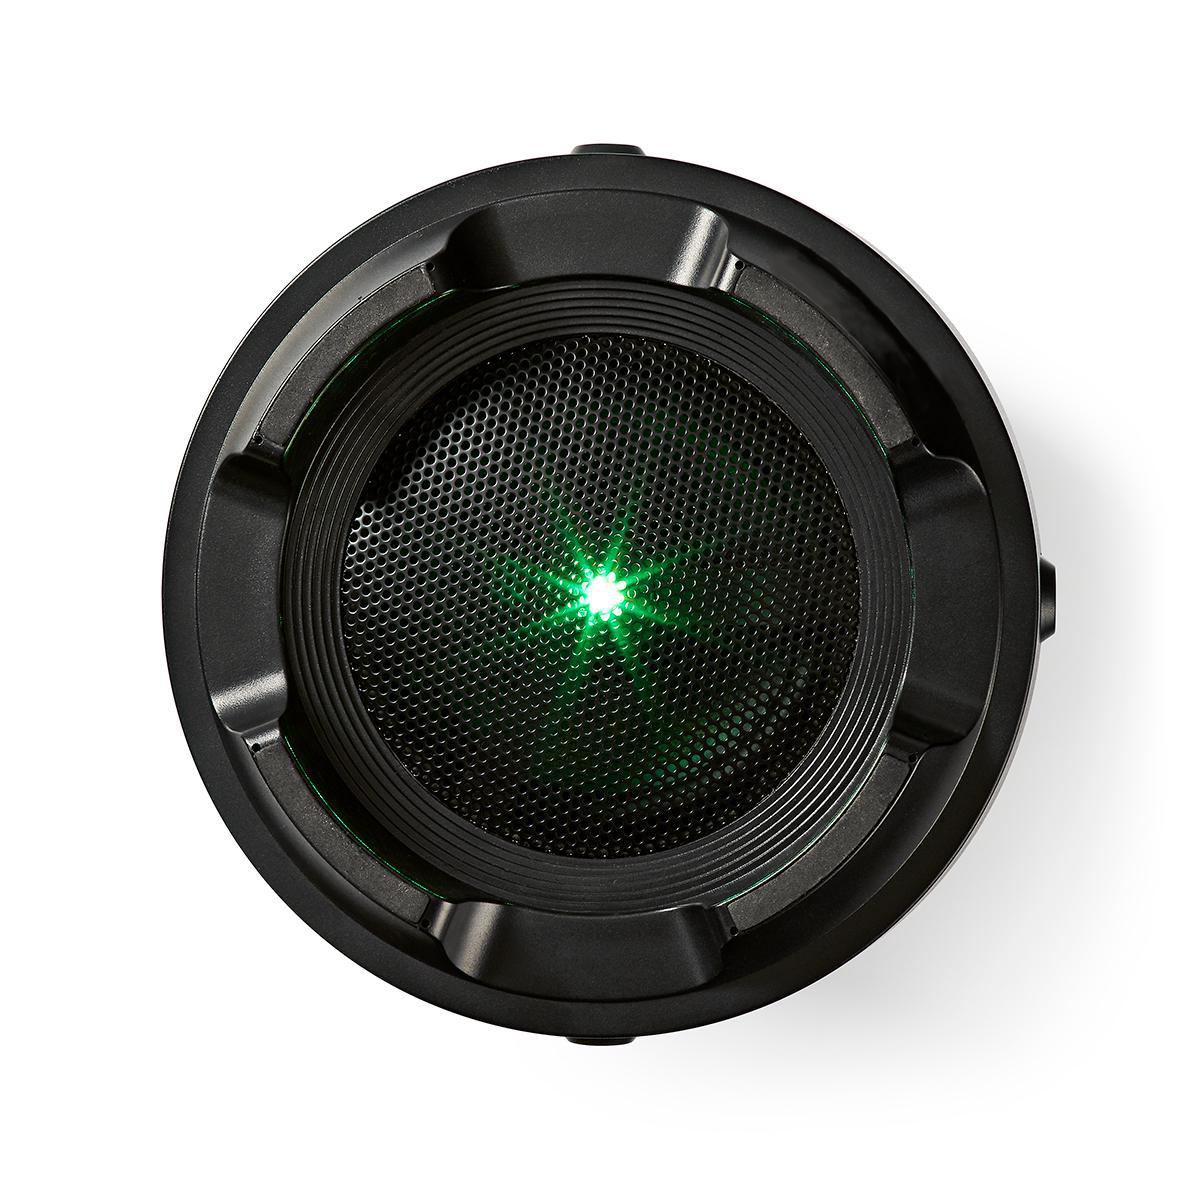 TURBOTRONIC BY Z-LINE Boombox koppelbar Lautsprecher, Akku Black Soundbox kabellos tragbarer Bluetooth®-Partylautsprecher